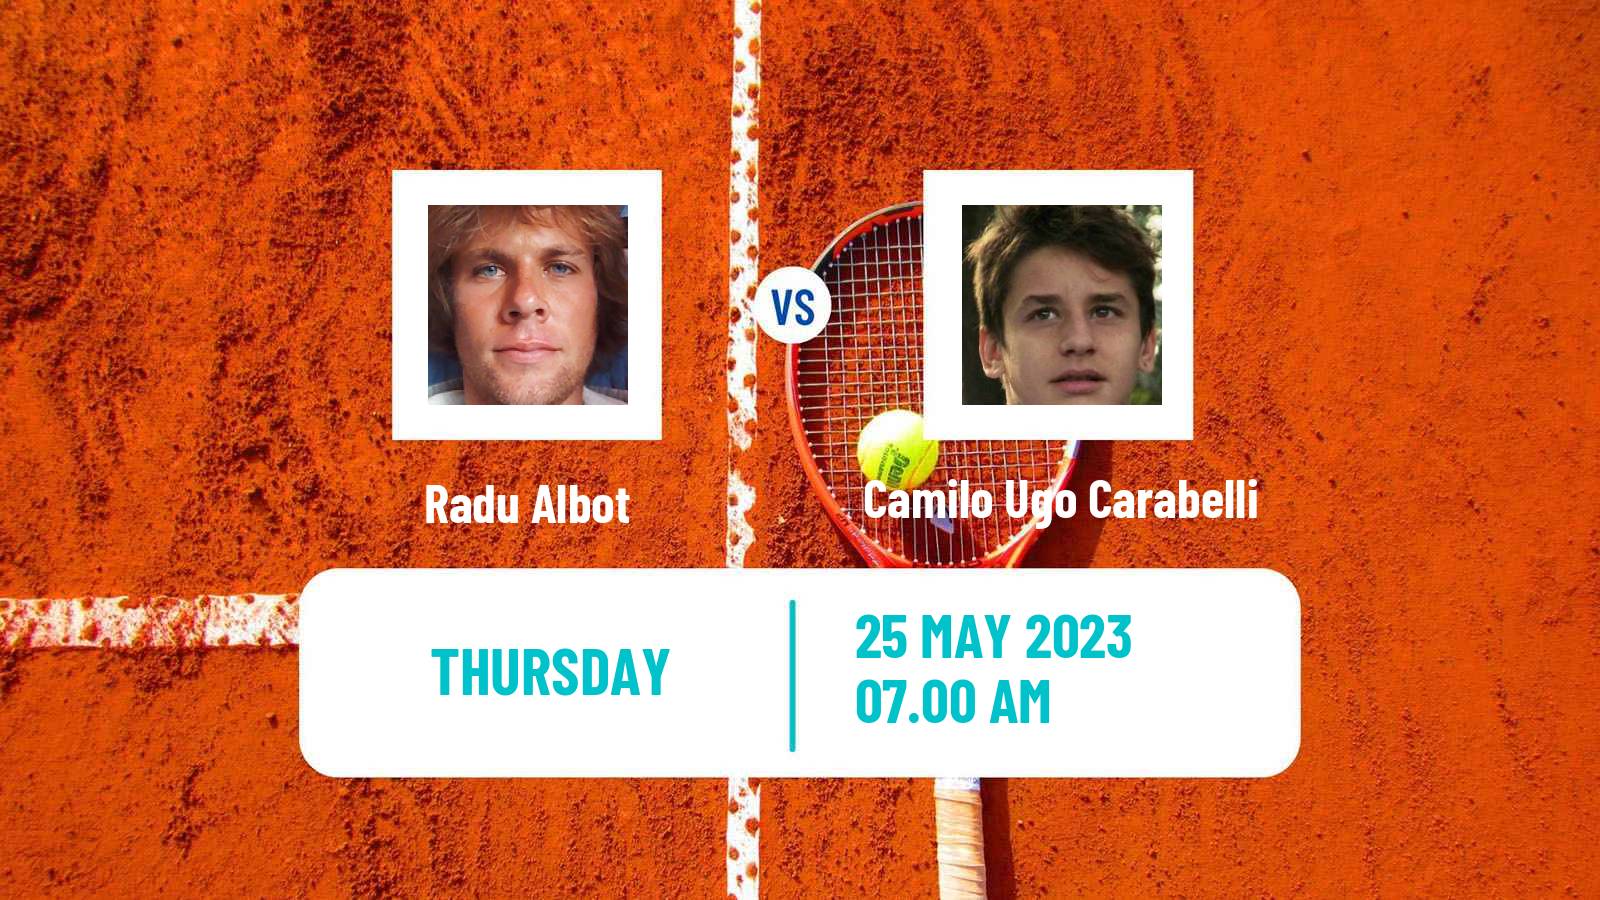 Tennis ATP Roland Garros Radu Albot - Camilo Ugo Carabelli